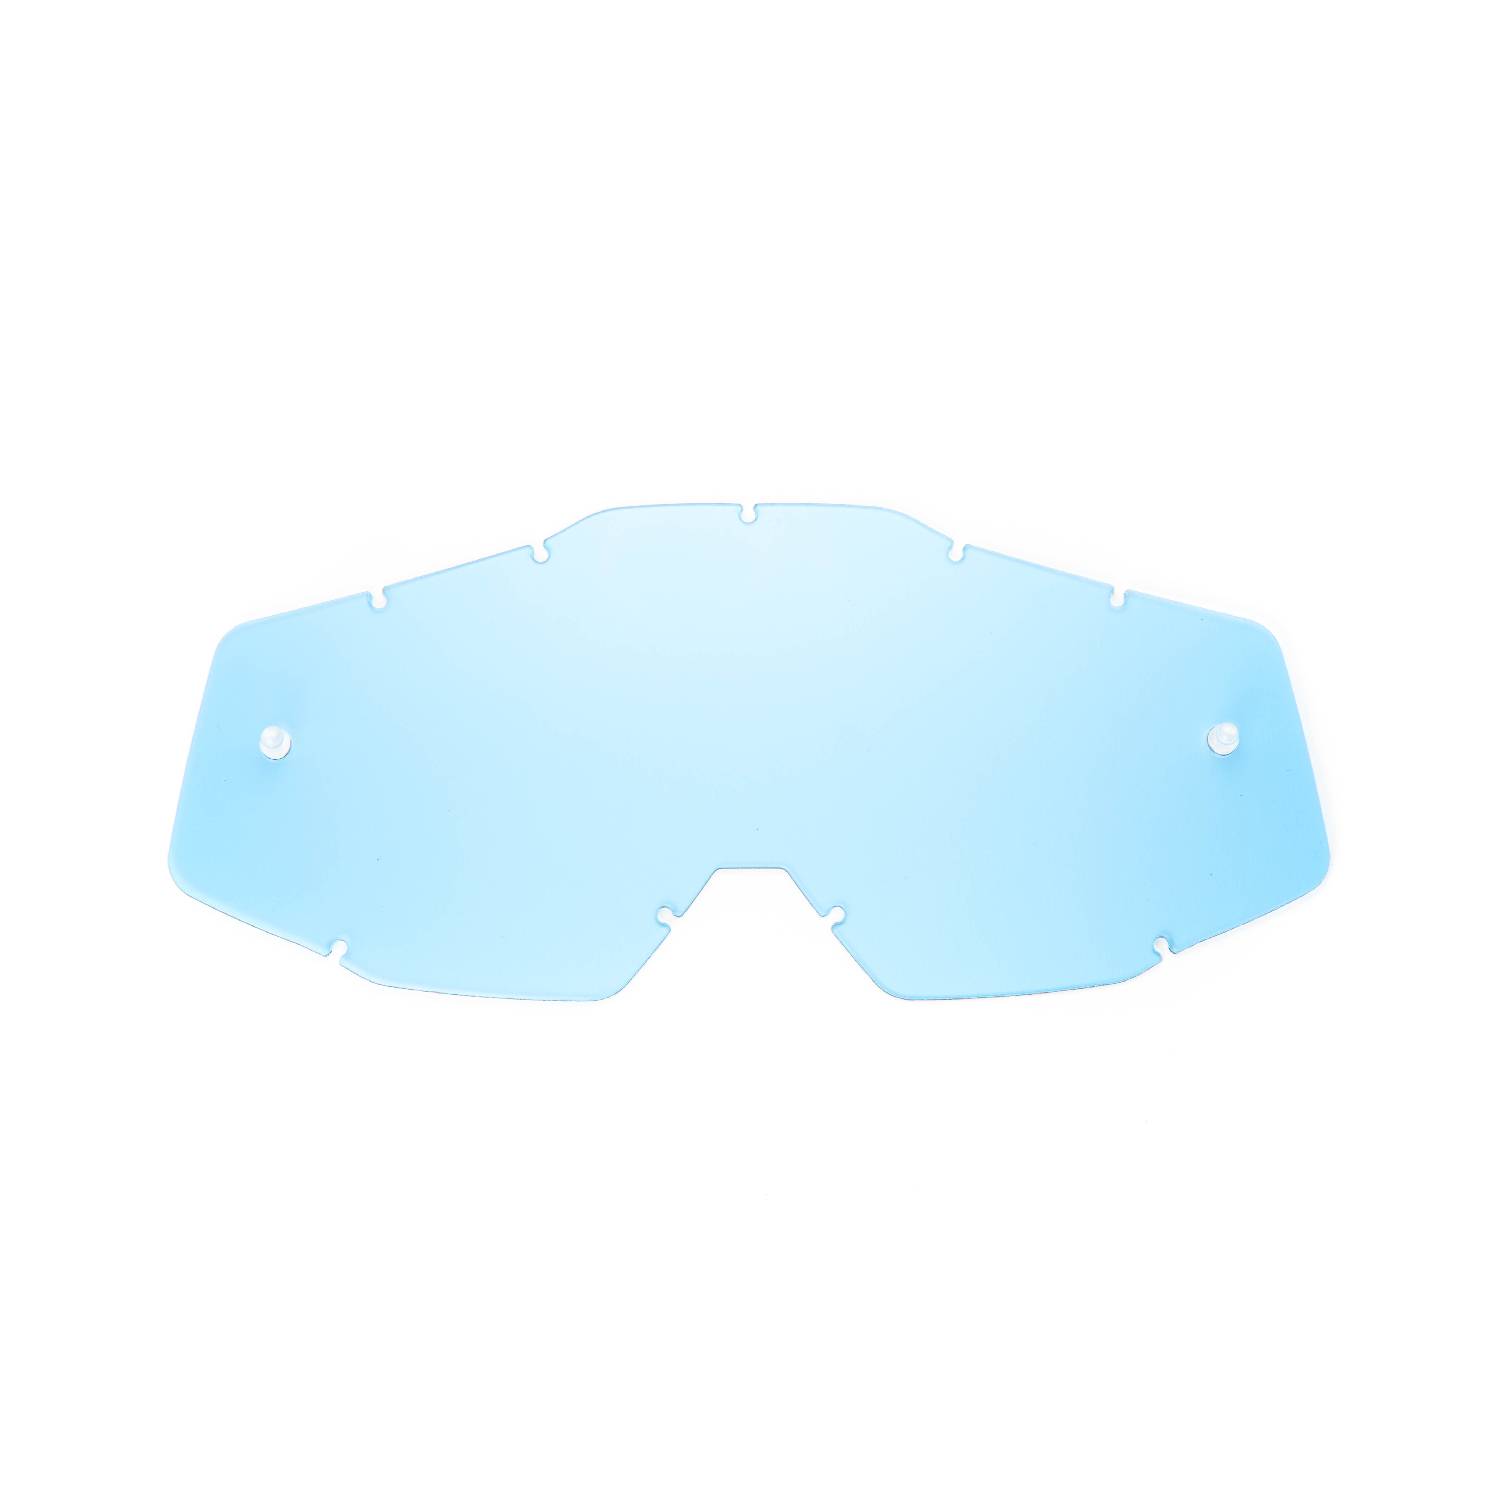 Lente di ricambio blu compatibile per occhiale/maschera 100% Racecraft / Strata / Accuri / Mercury